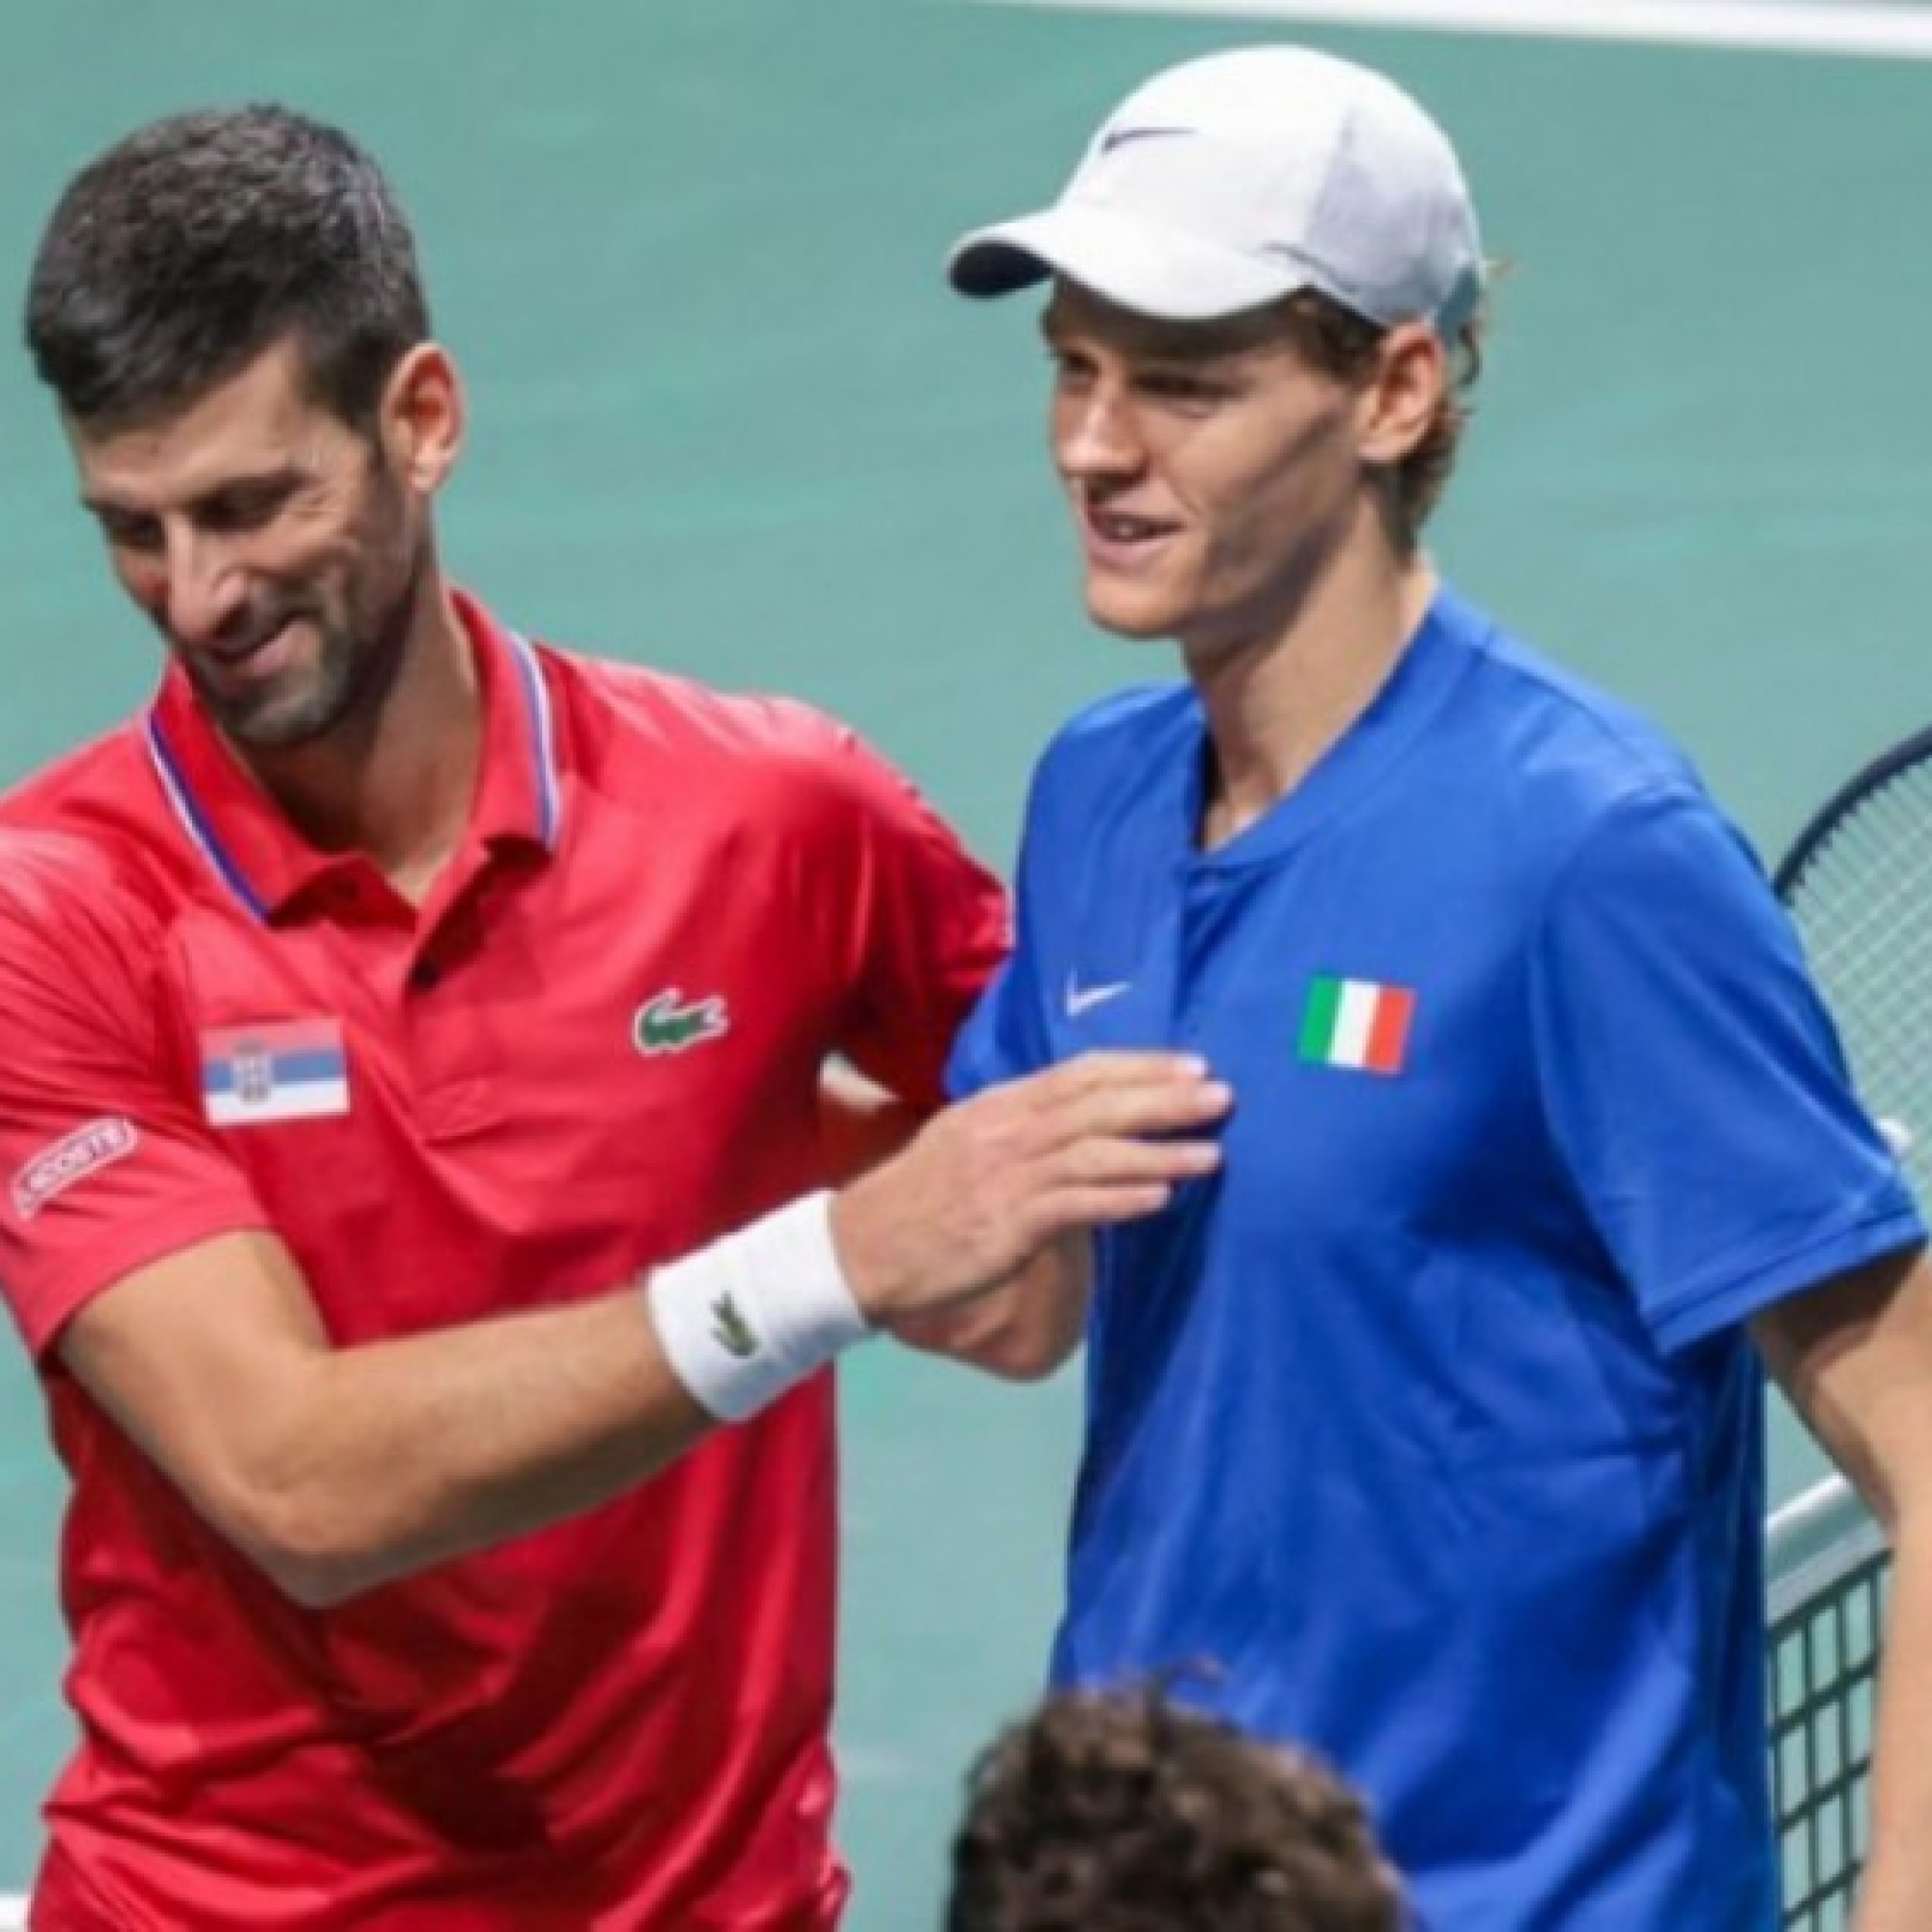  - Nóng: Sinner dễ nghỉ Roland Garros, vẫn có thể lấy số 1 thế giới của Djokovic